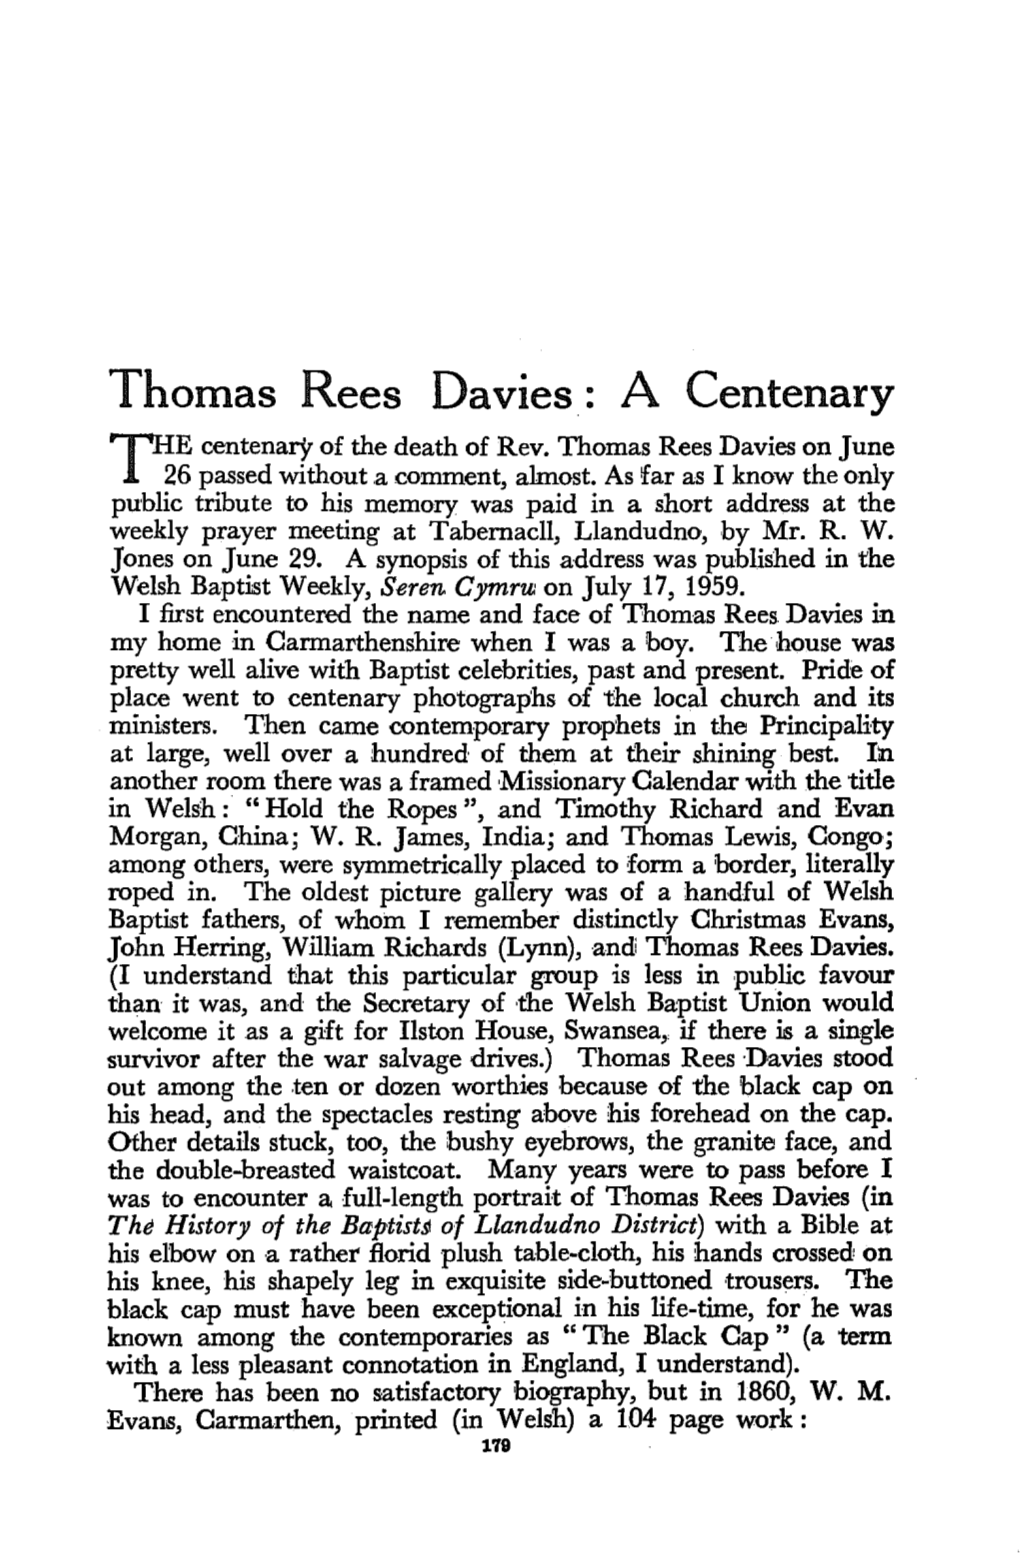 Thomas Rees Davies: a Centenary the Centenary of the Death of Rev